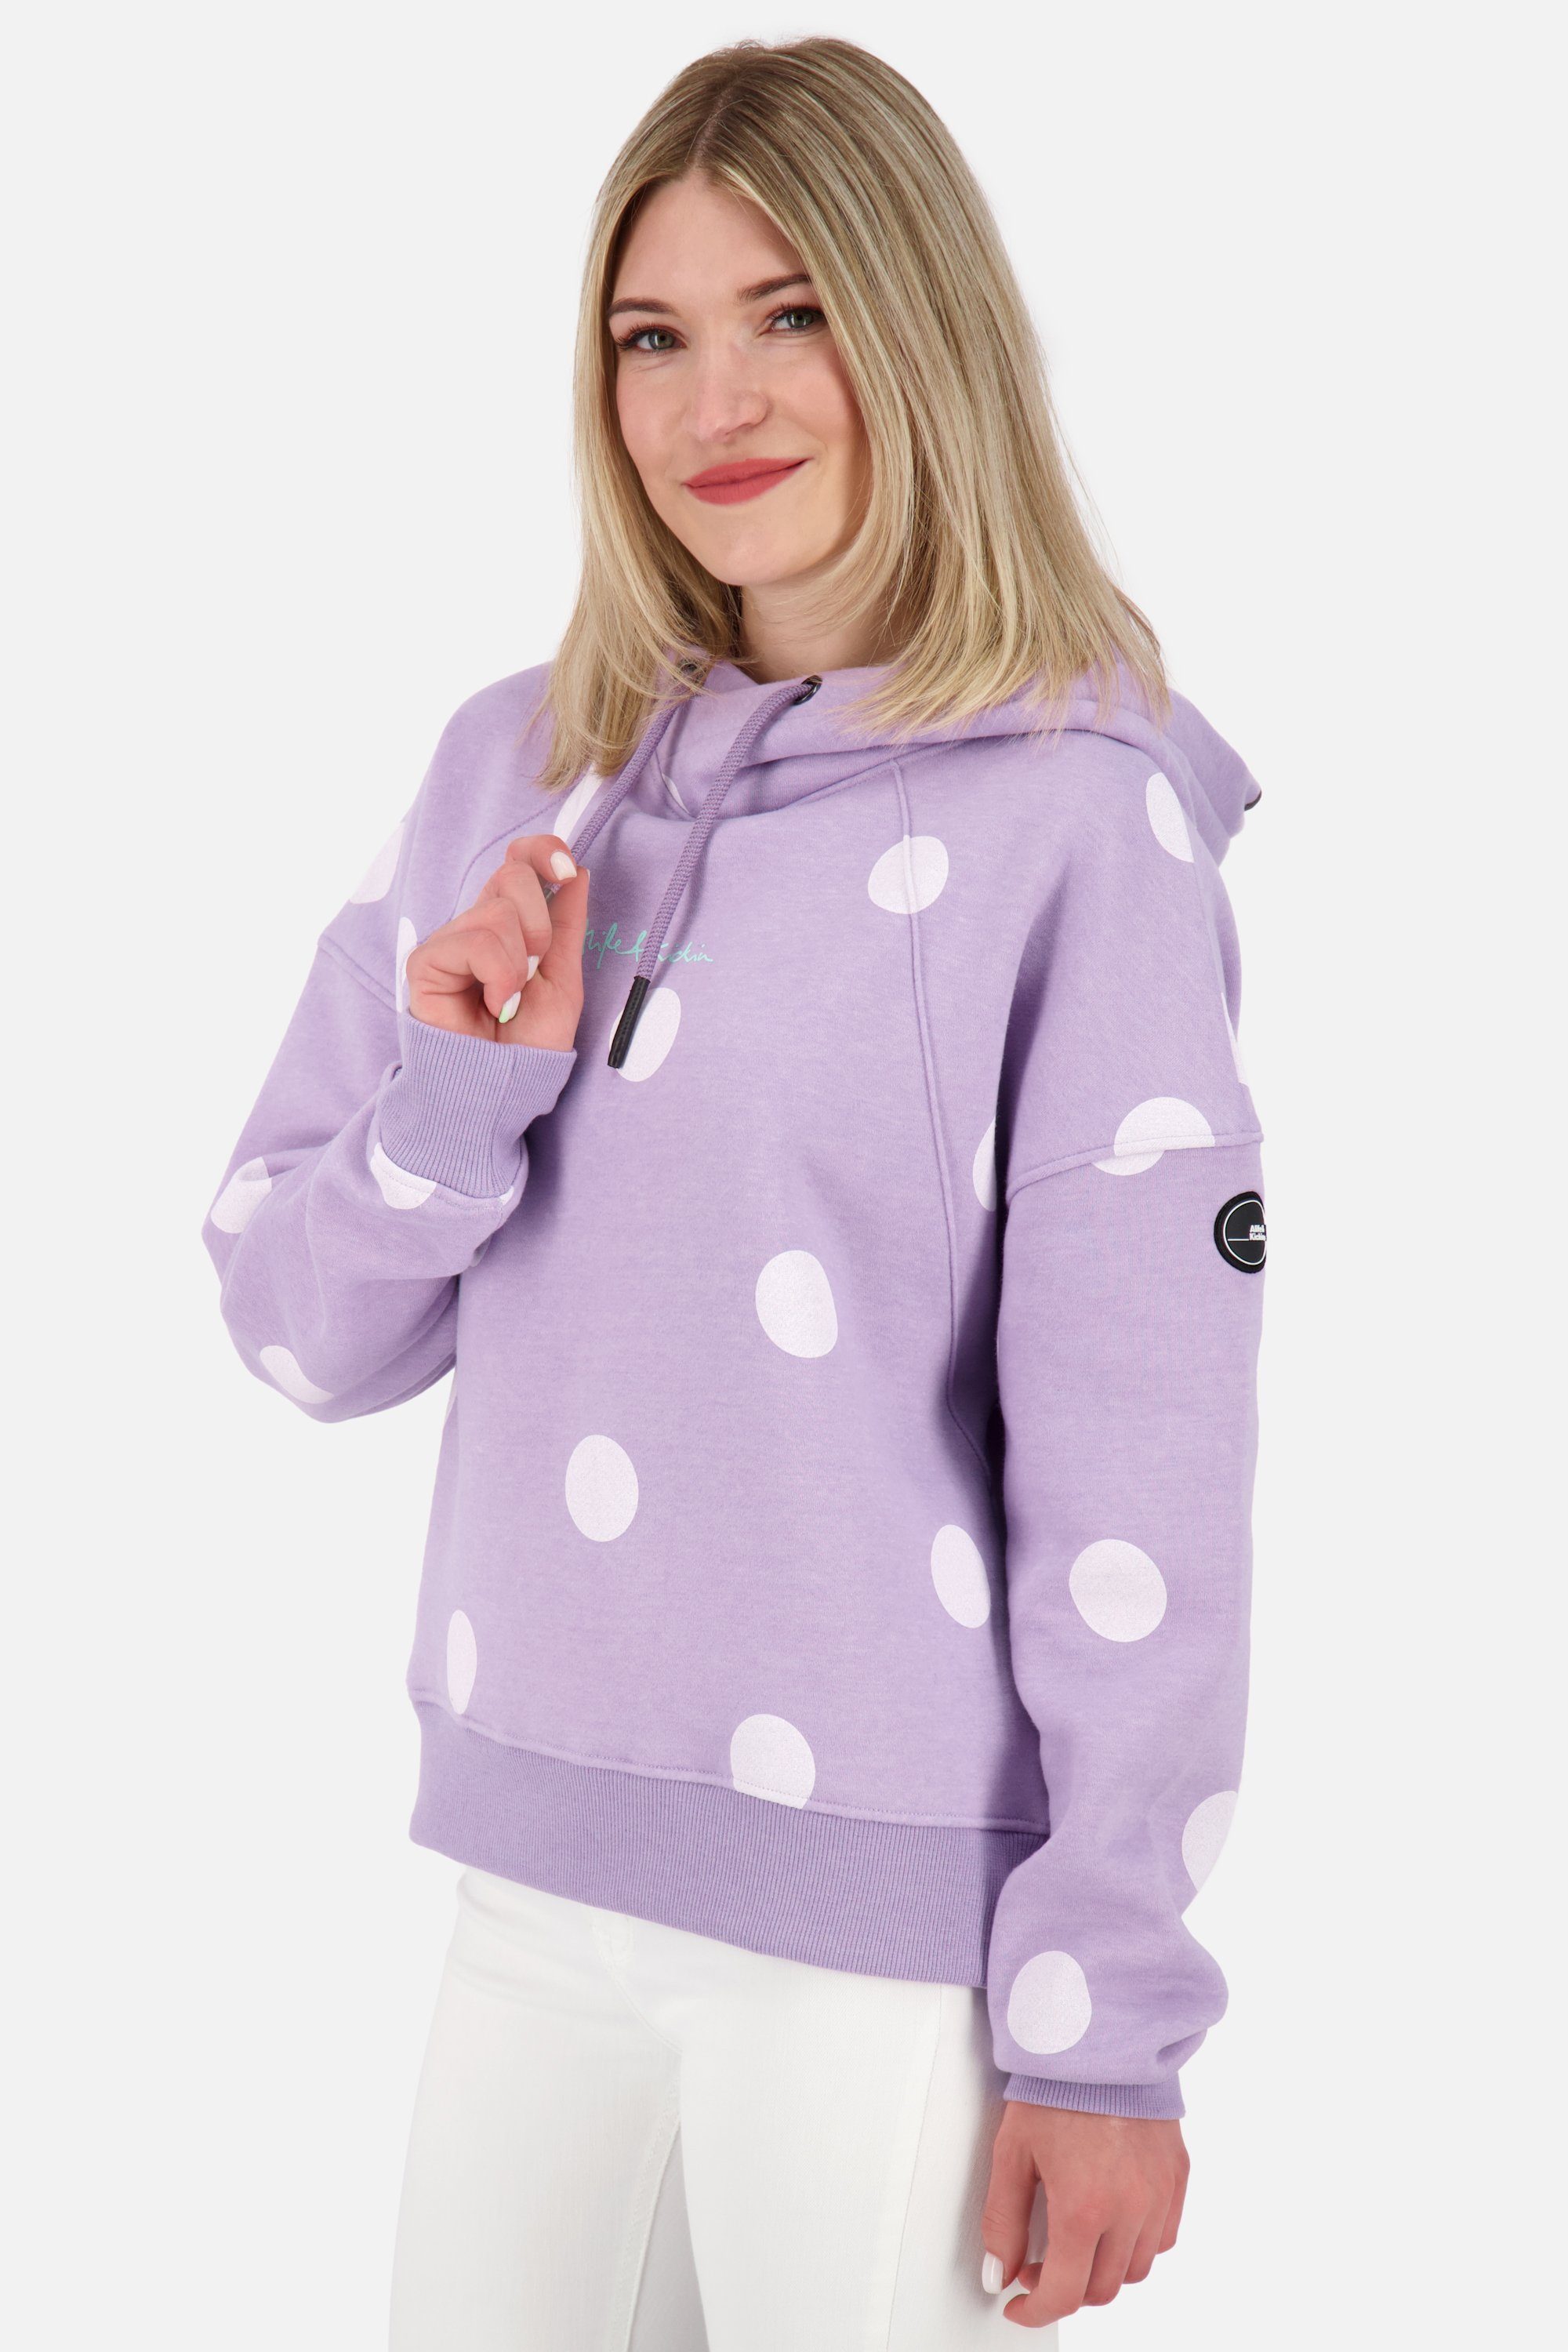 Kapuzensweatshirt Kickin Kapuzensweatshirt, Alife Sweatshirt & Damen JessyAK B melange Hoodie lavender digital Pullover